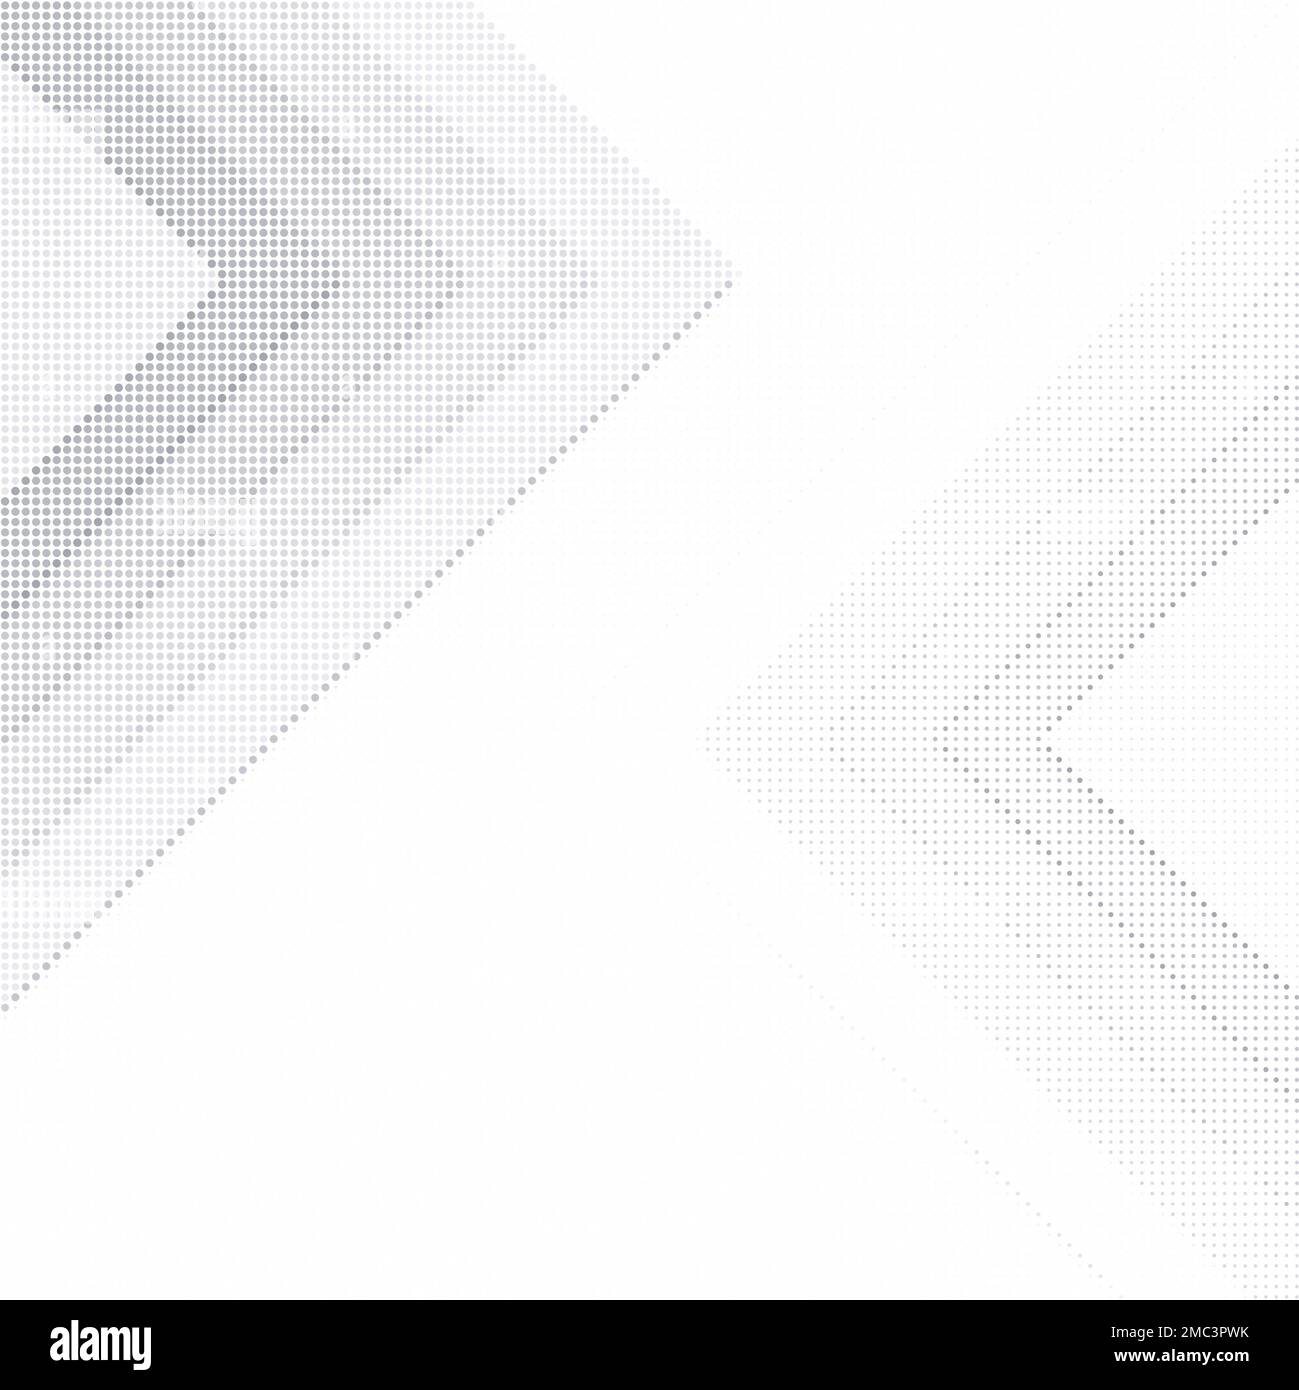 Zwei abstrakte graue Halbtonmuster auf Weiß mit Kopierbereich. Gepunkteter Hintergrund für Vorlage, Broschüre, Visitenkarte, Webseite usw. Stockfoto